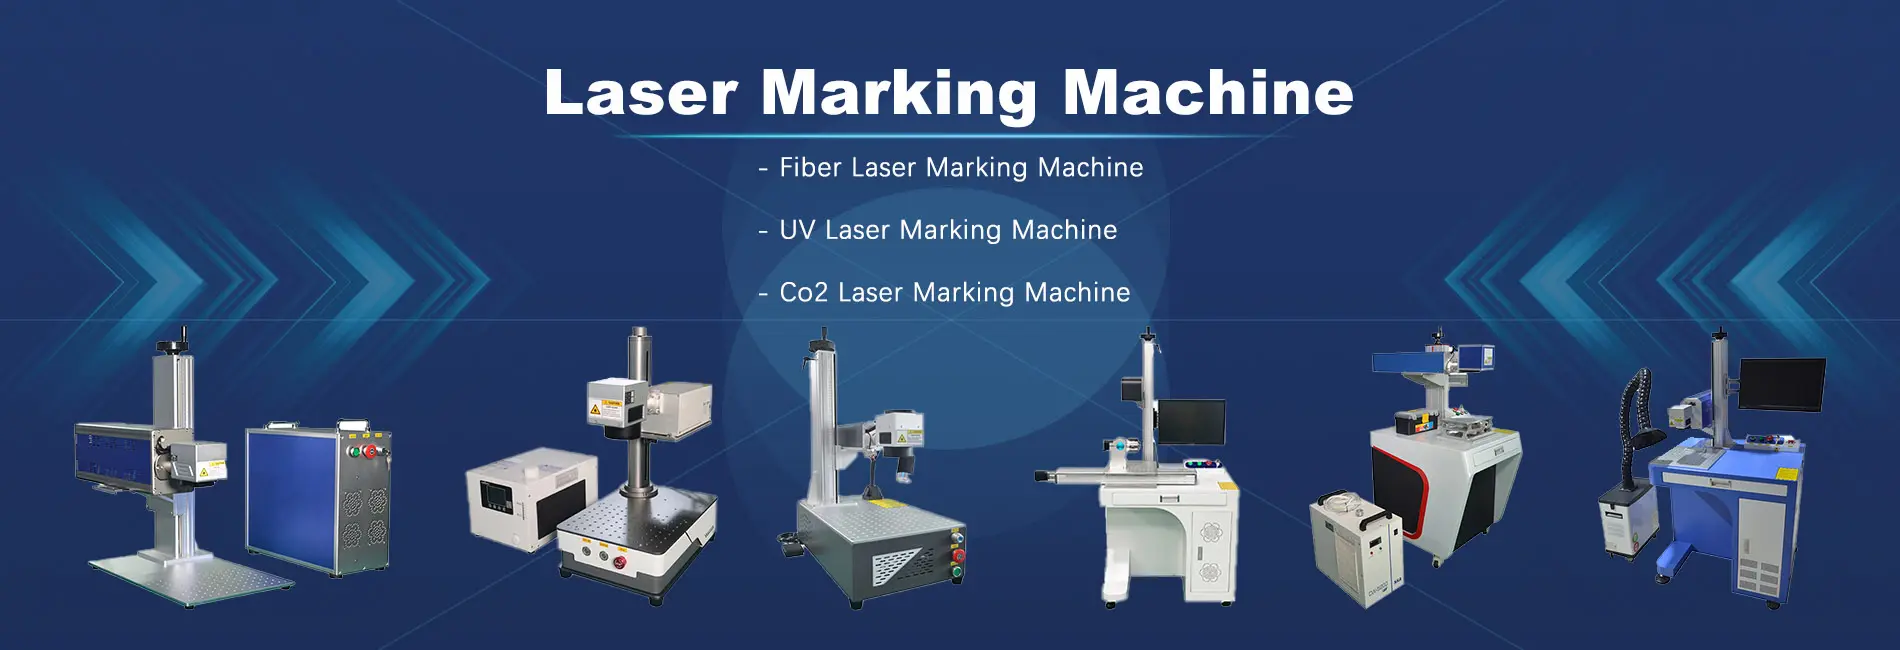 laser marking machine banner